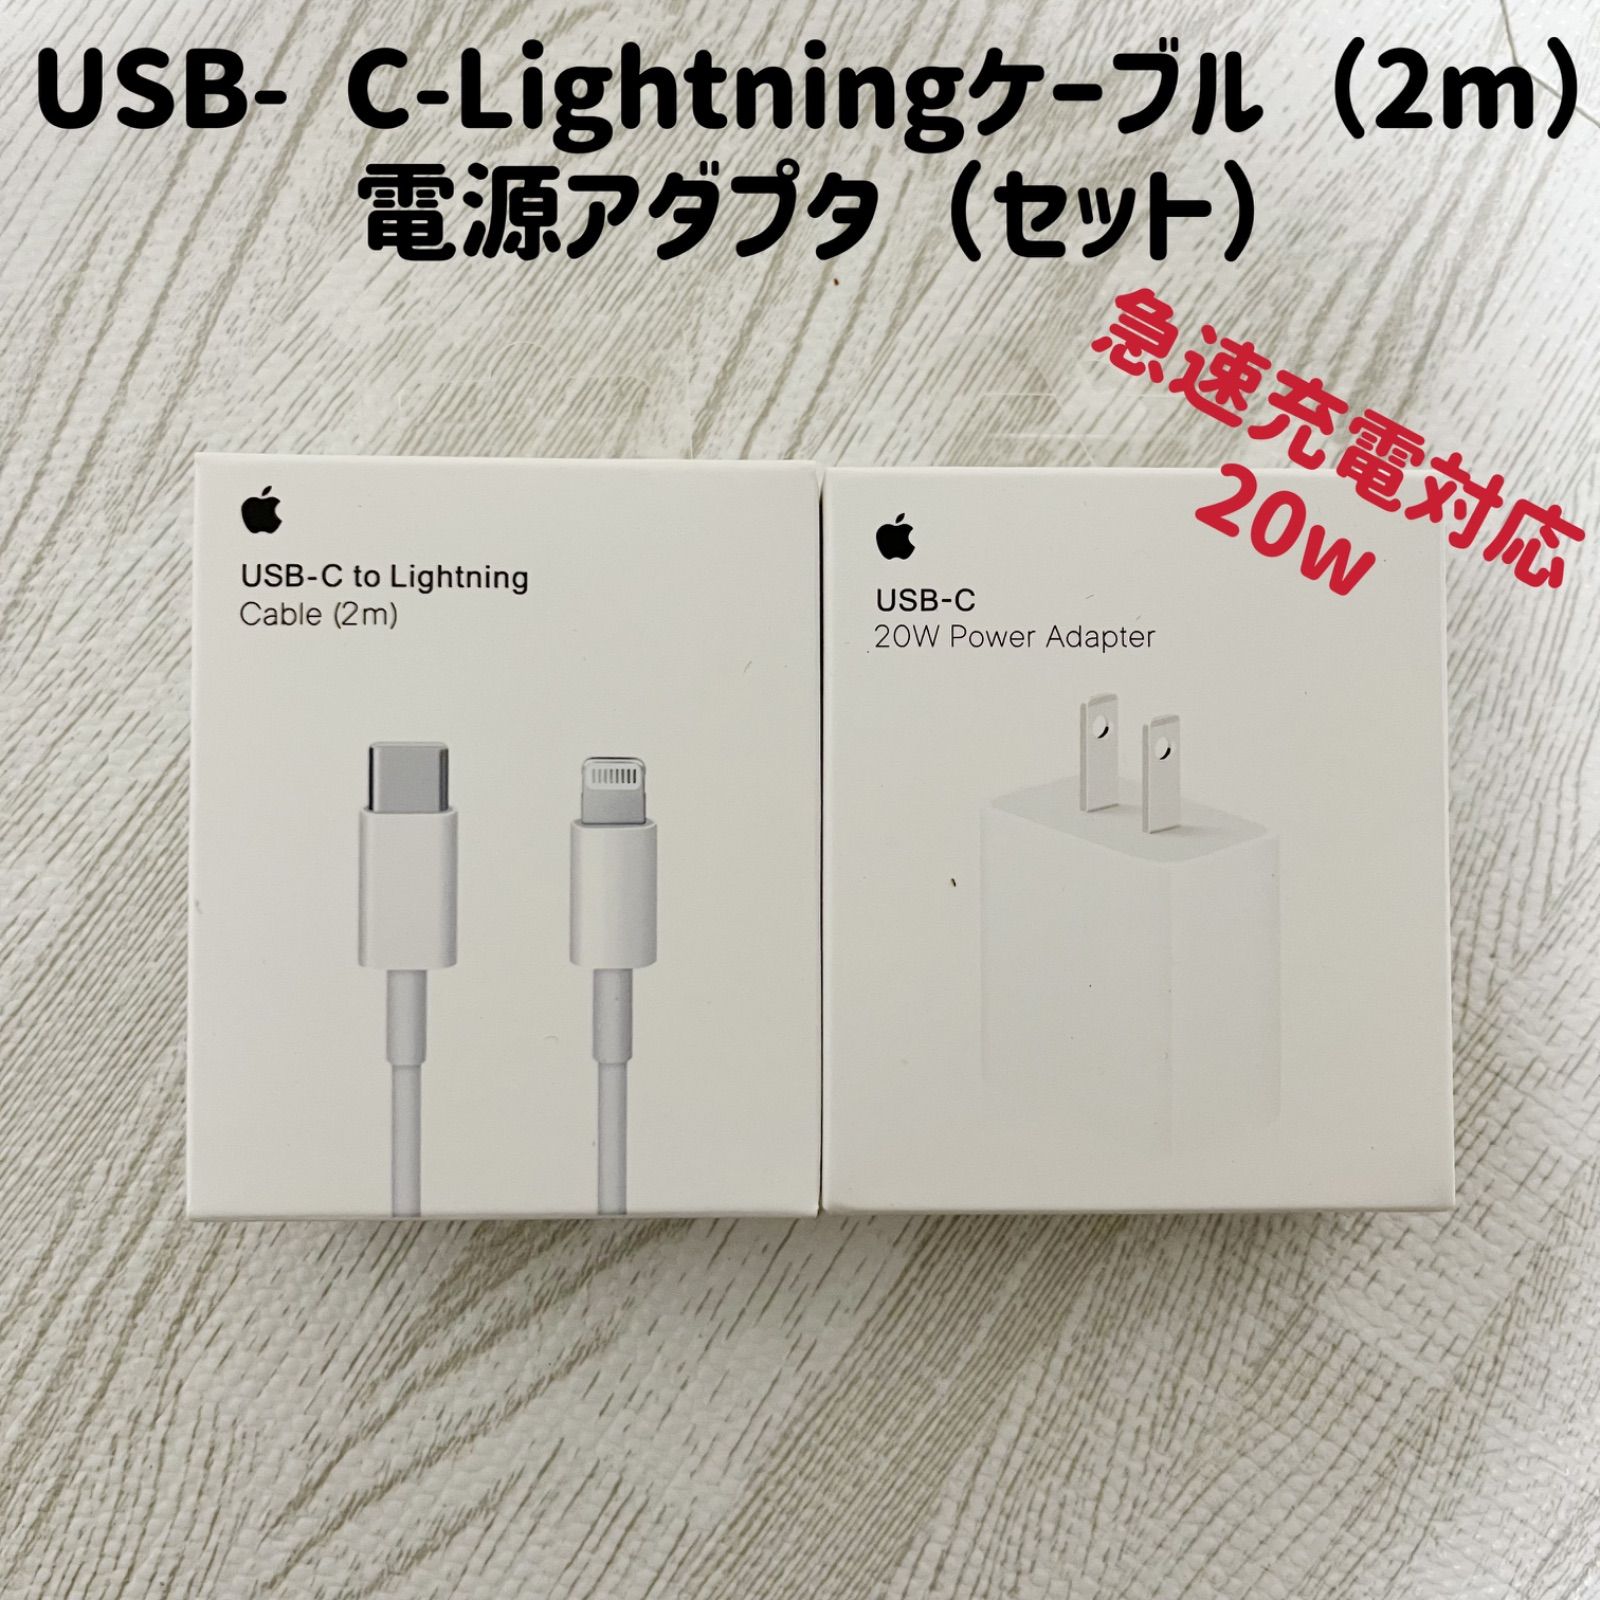 適当な価格 Apple純正 Genuine USB-C USB-C Apple 充電アダプタ Meter 